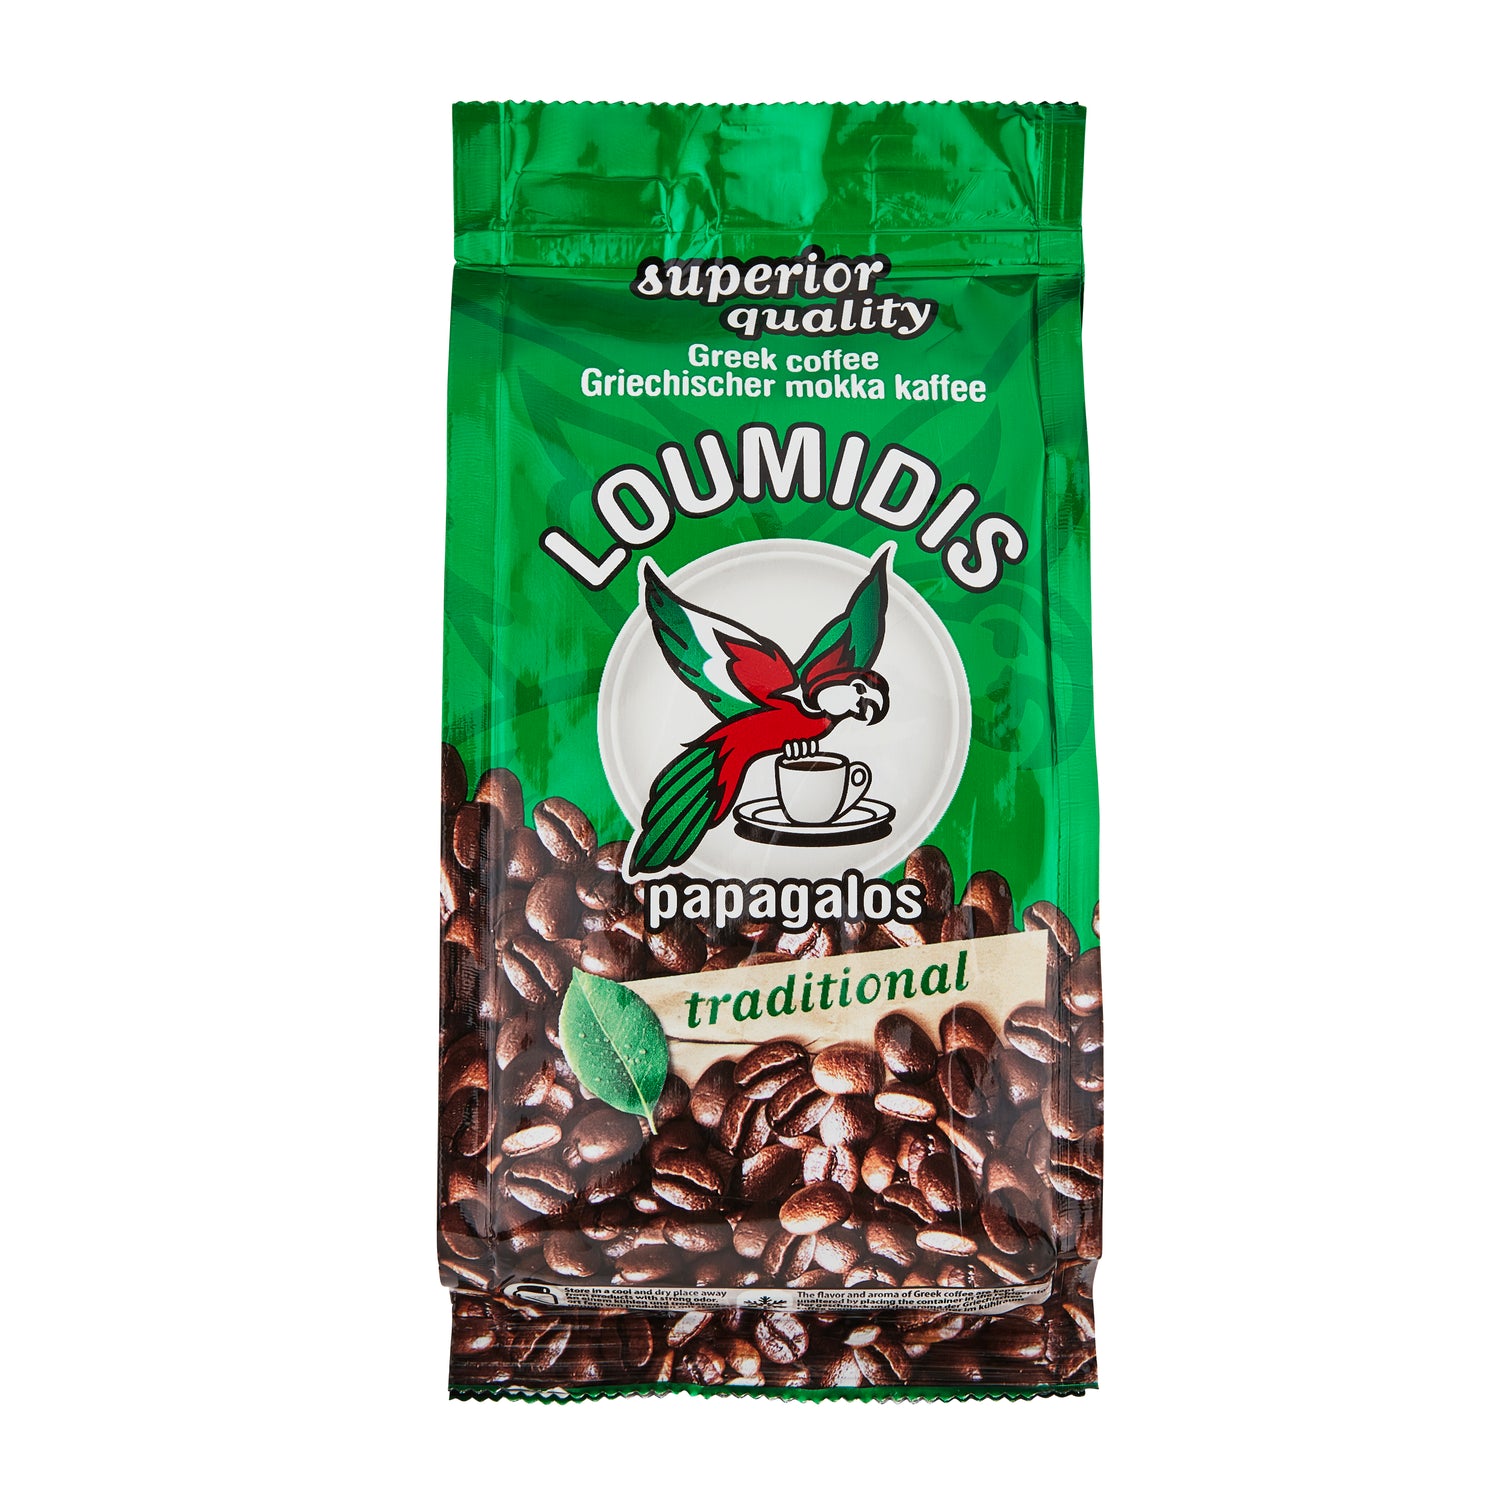 Loumidis Griechischer gemahlener Kaffee 96 g